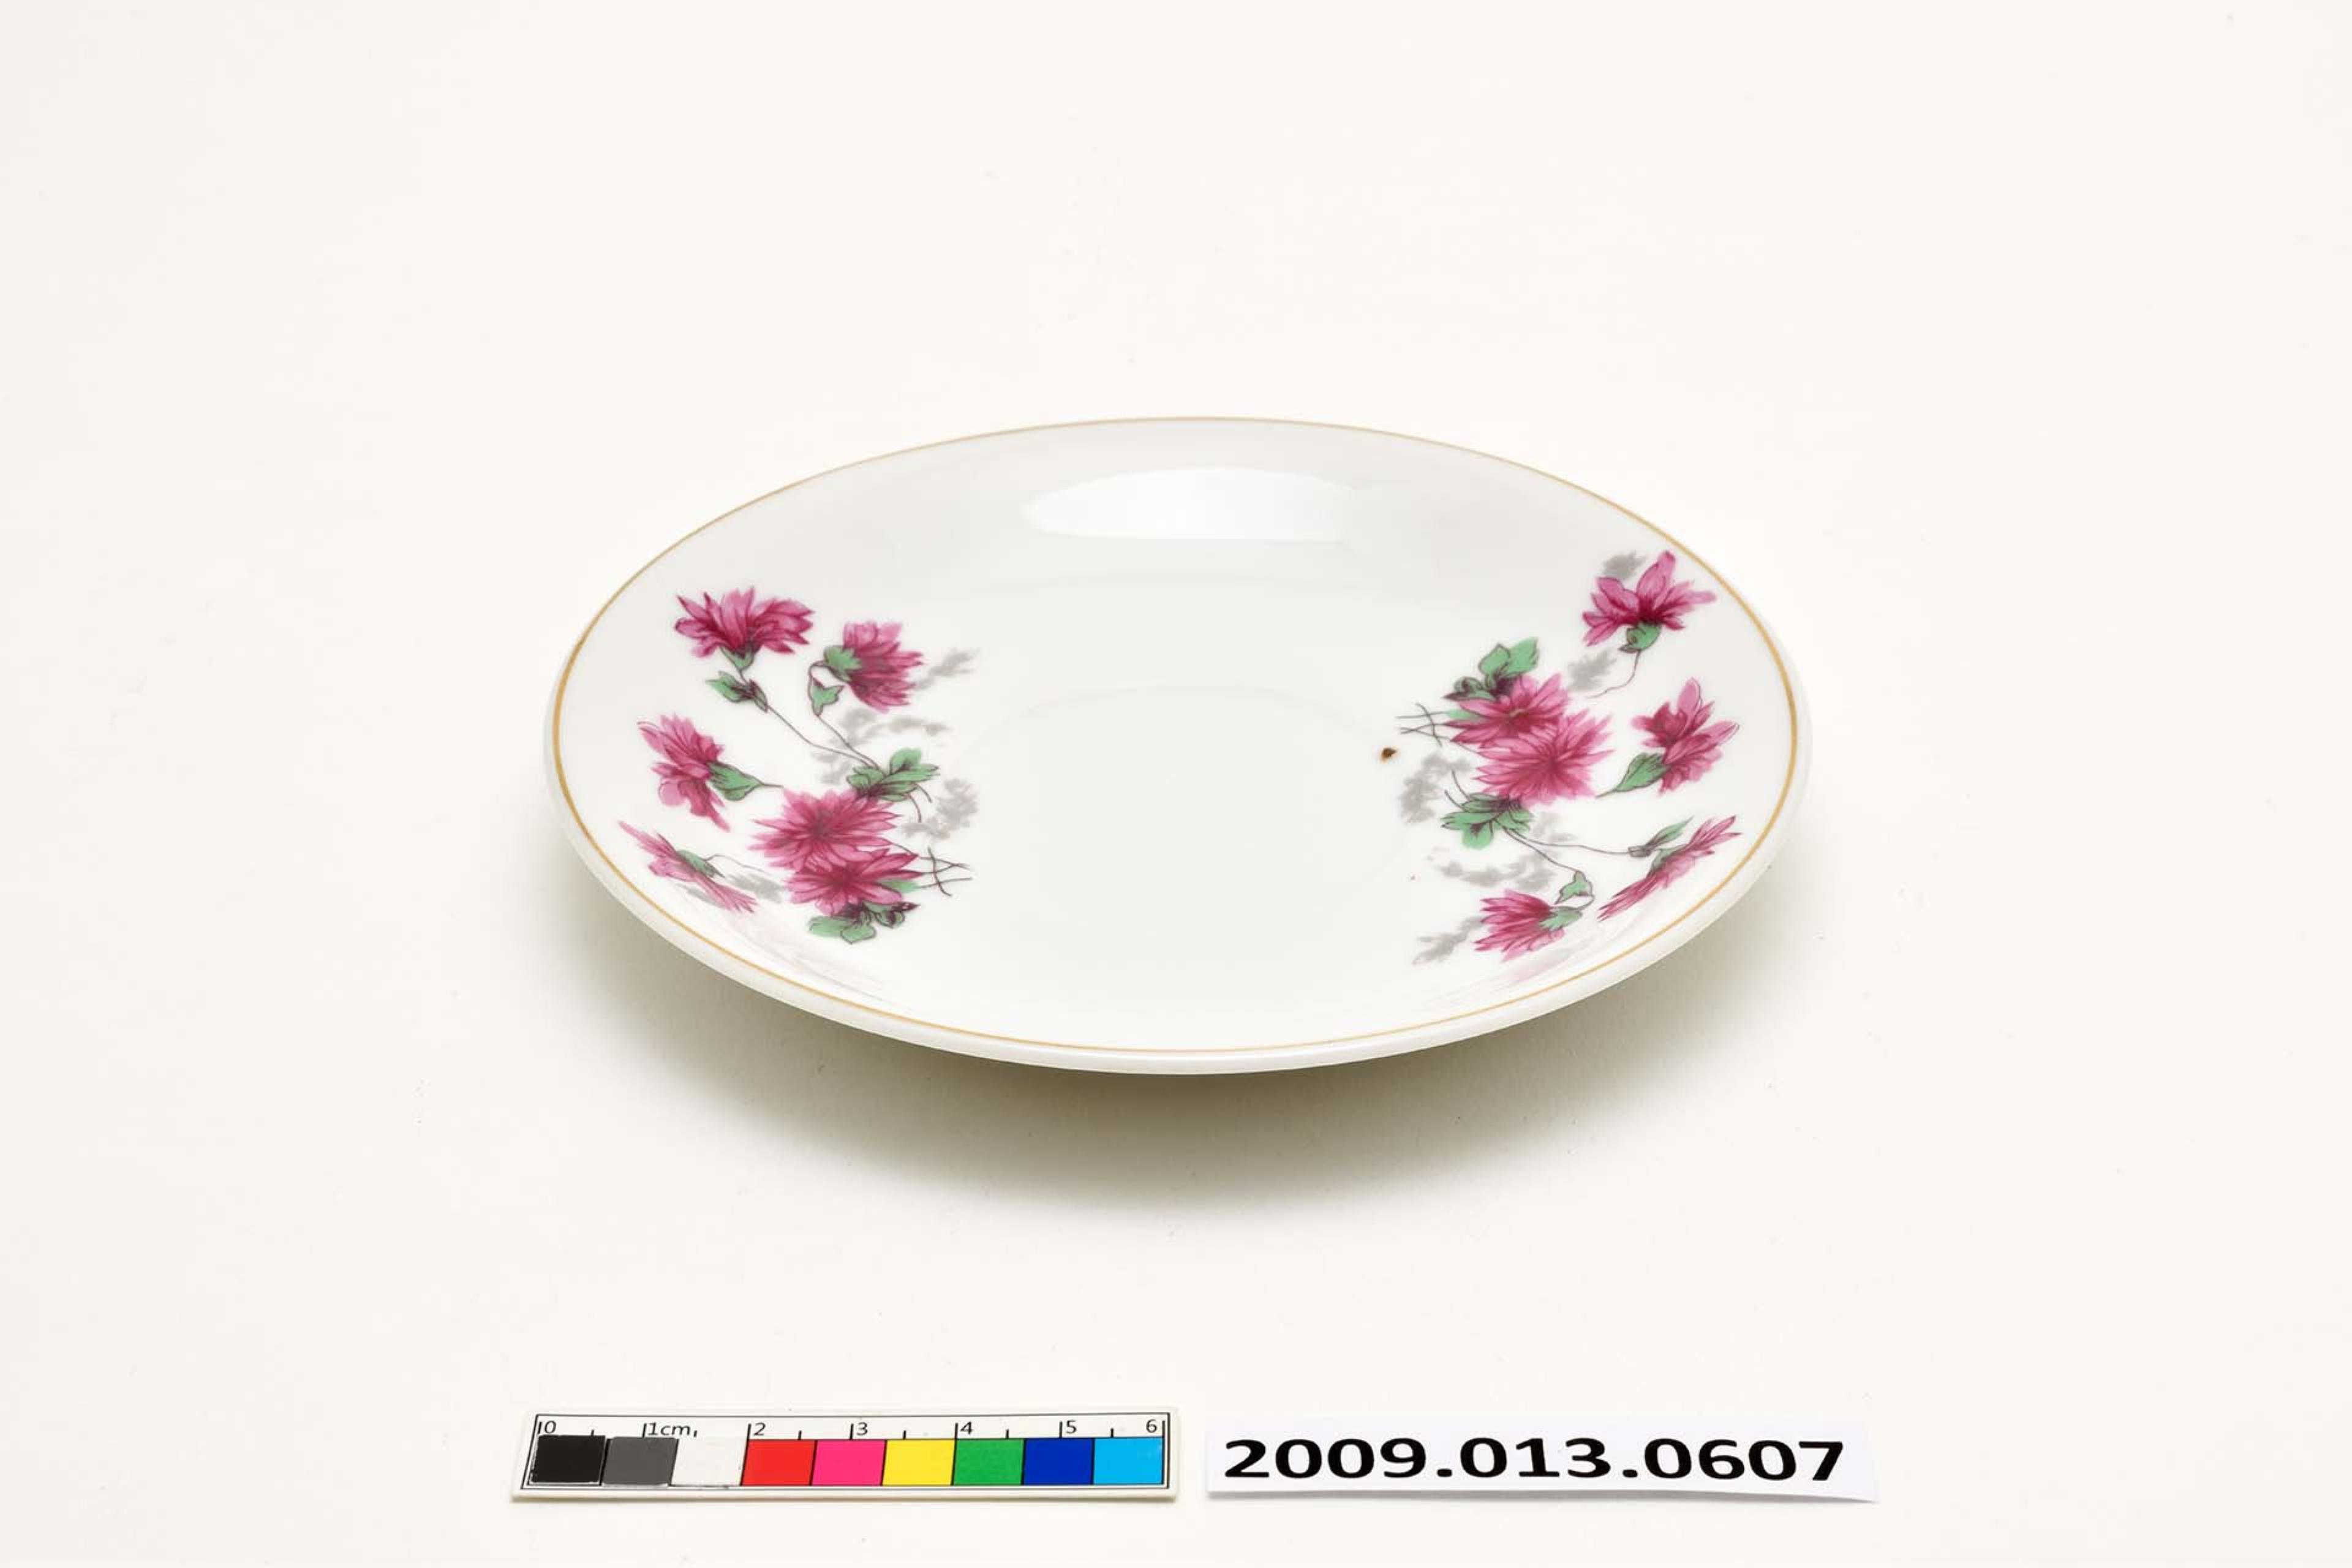 白瓷彩釉印花花卉紋圓碟 (共2張)